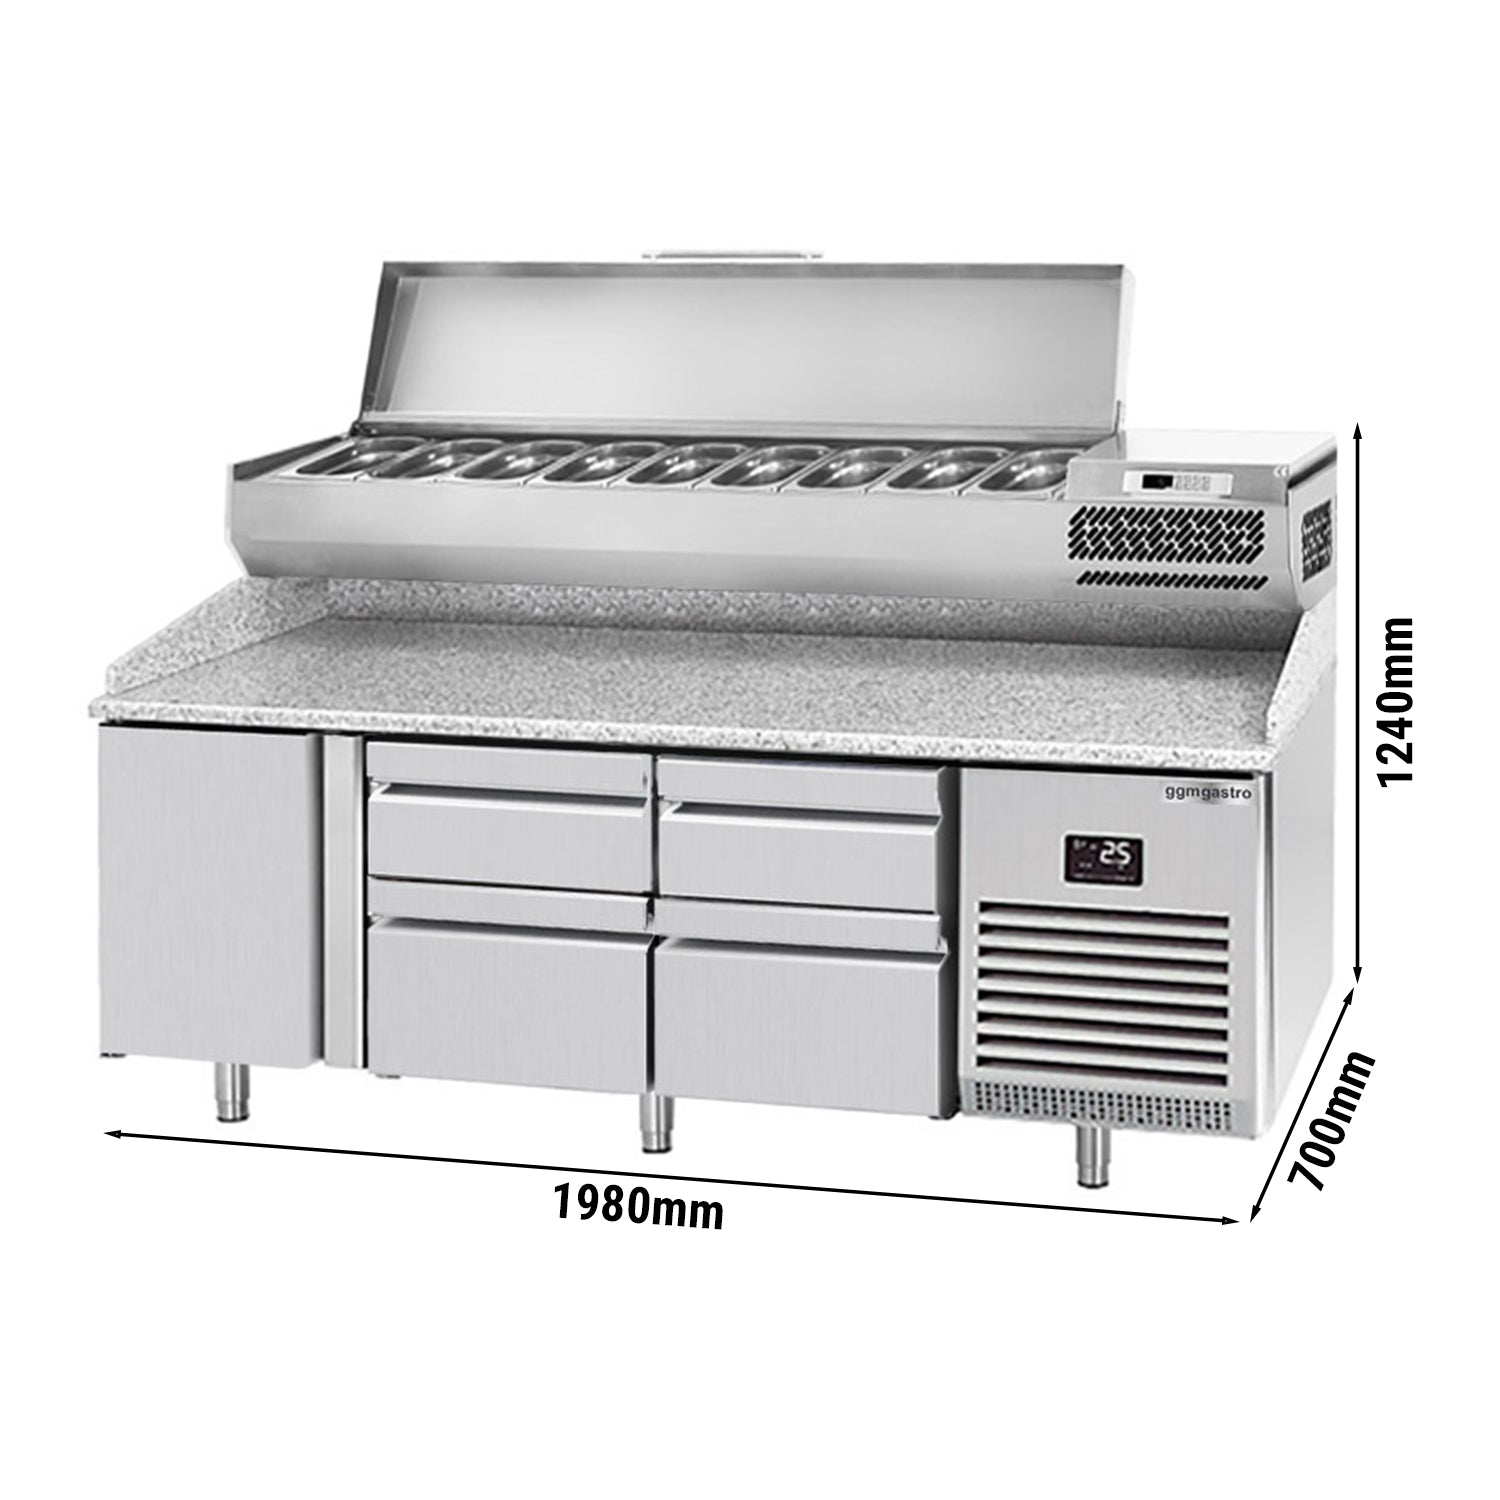 Охладителна маса за пица (GN) - с 1 врата, 4 чекмеджета 2x 2/3 и 2x 1/3 (GN 1/1) и охлаждаща горна витрина за 9x GN 1/4 контейнера